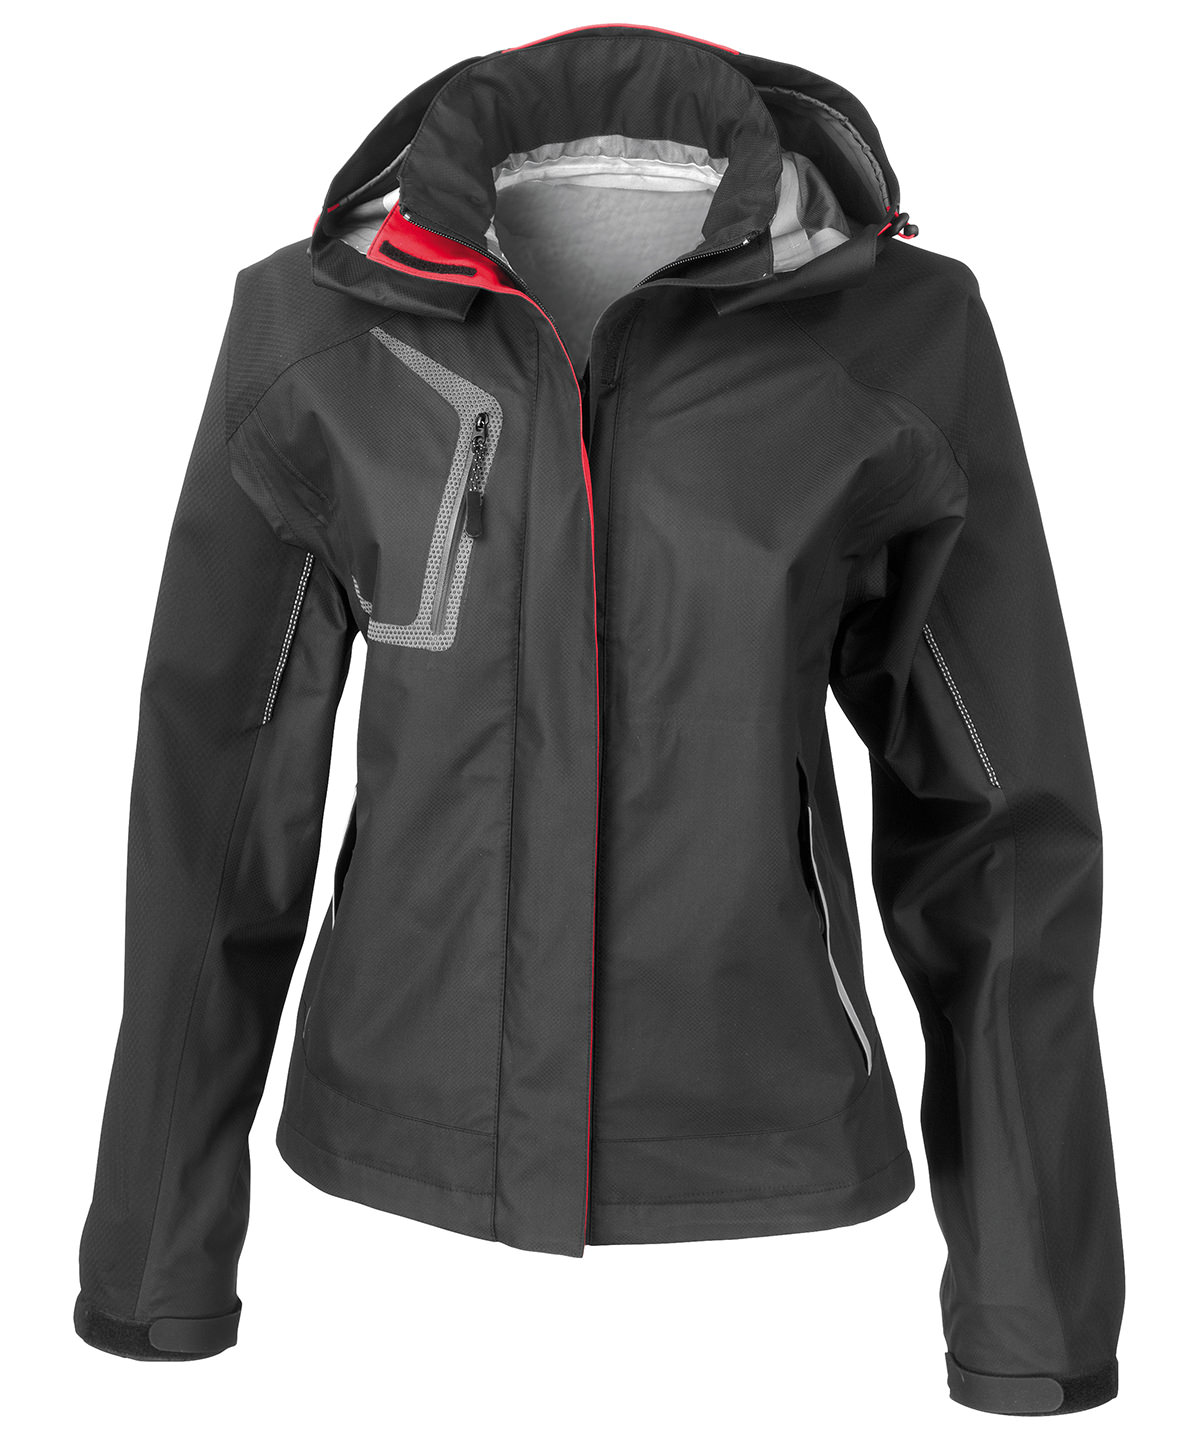 Personalised waterproof jackets - s108f black ft